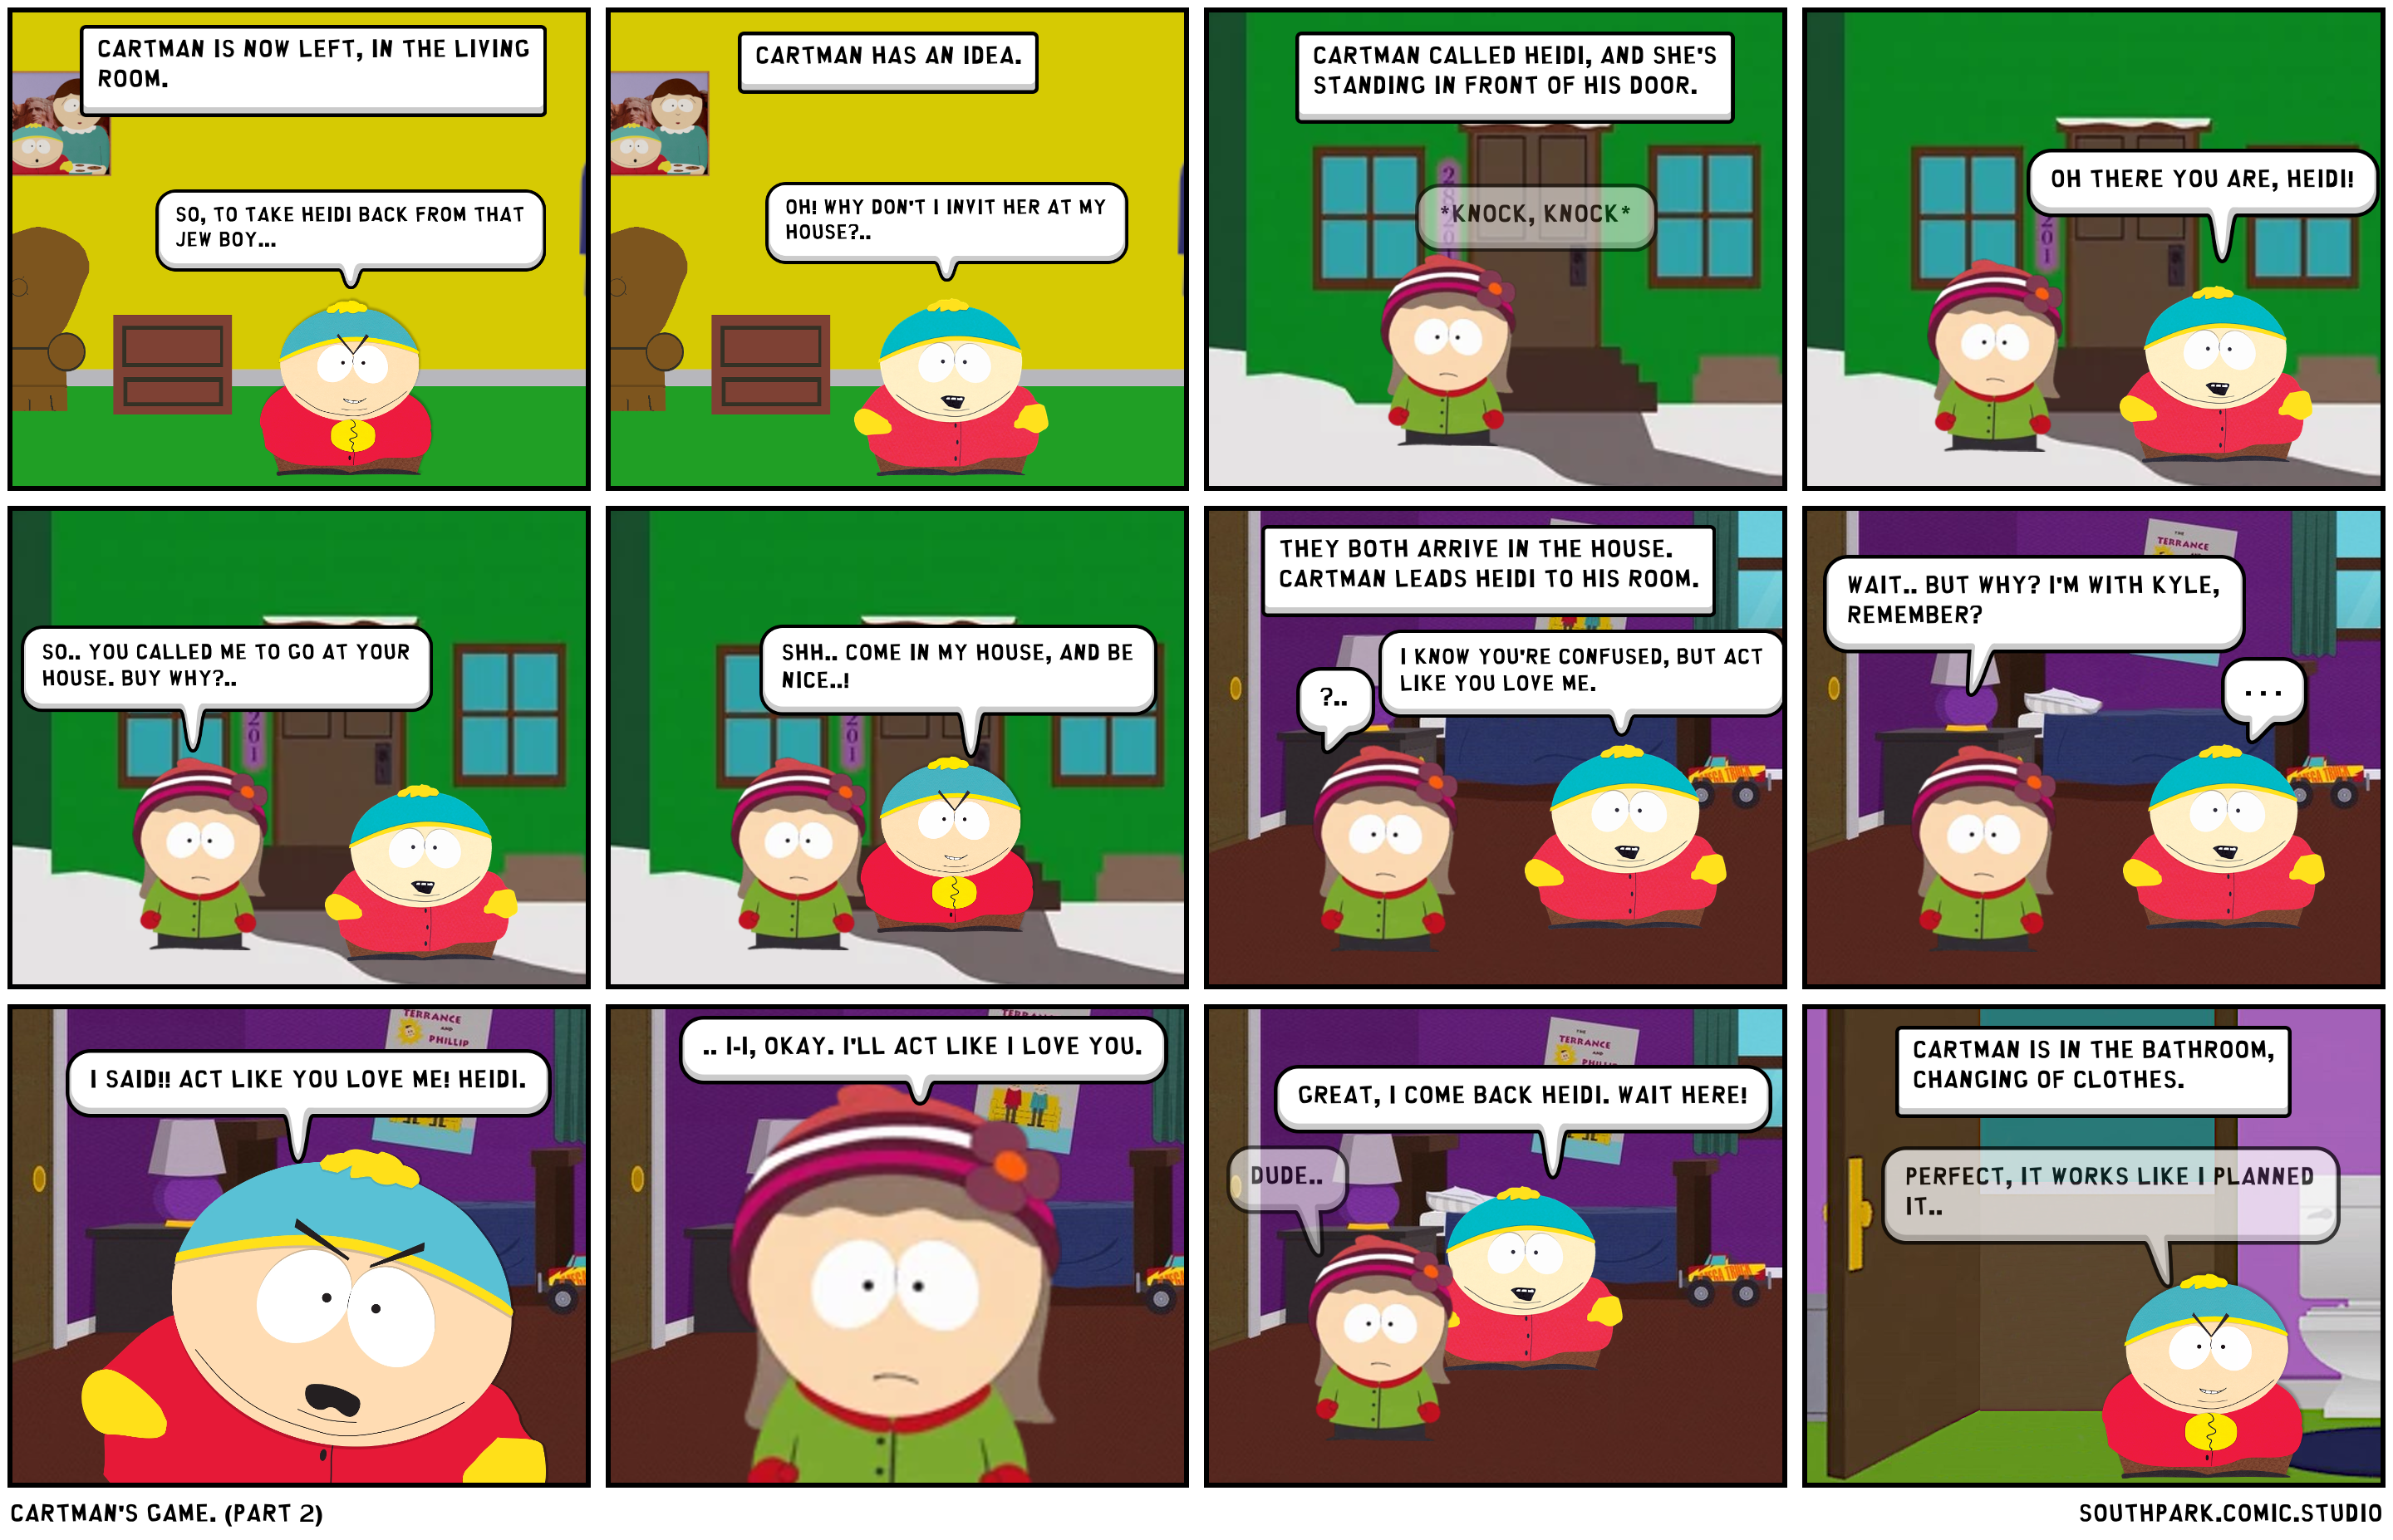 Cartman's game. (Part 2)